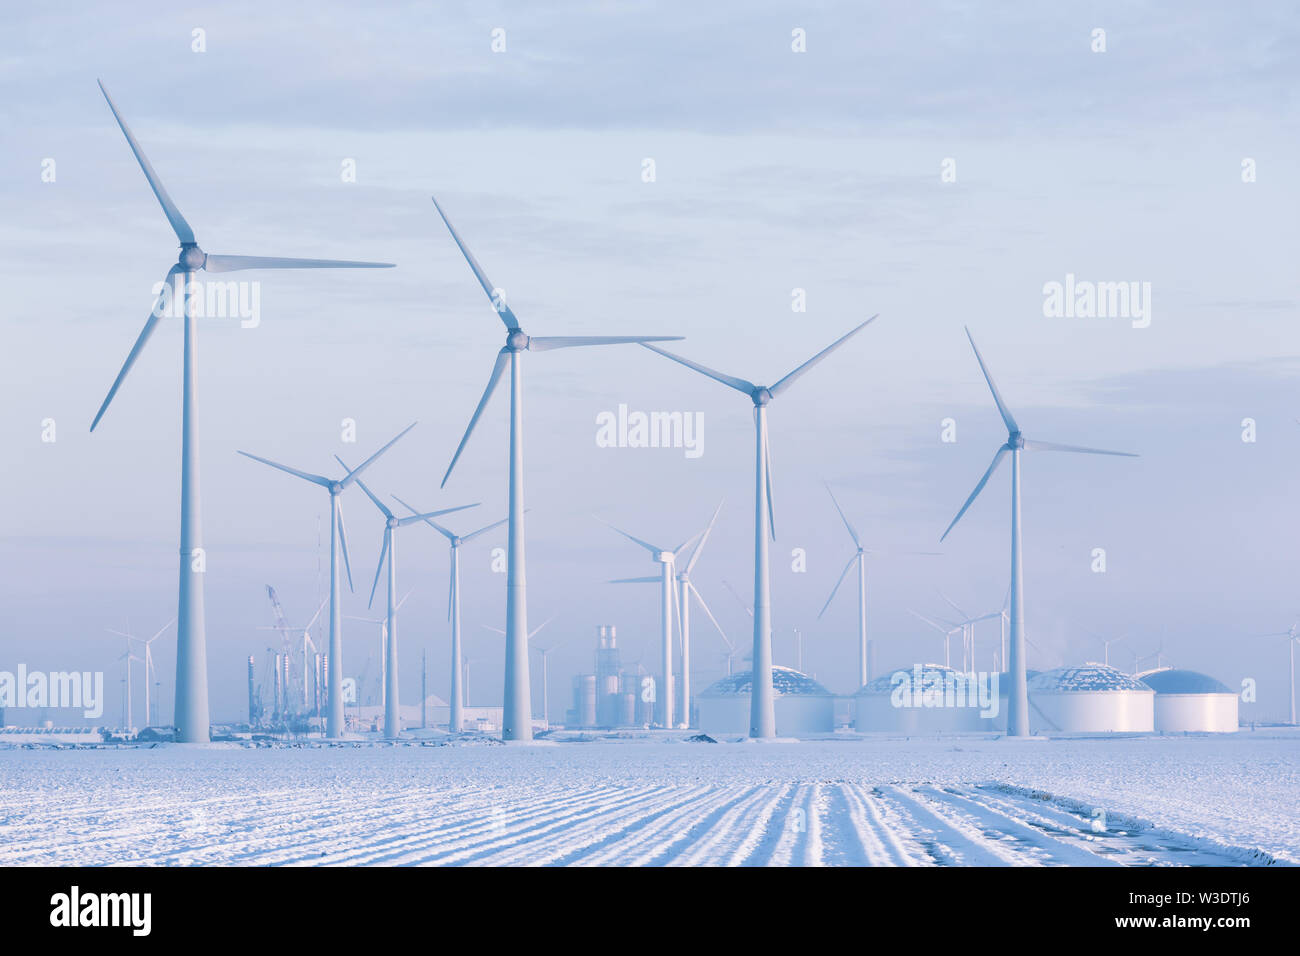 Les moulins à vent dans un paysage de neige blanc hiver produisant de l'énergie verte et durable pour réduire le réchauffement - Eemshaven, Groningen, Pays-Bas Banque D'Images